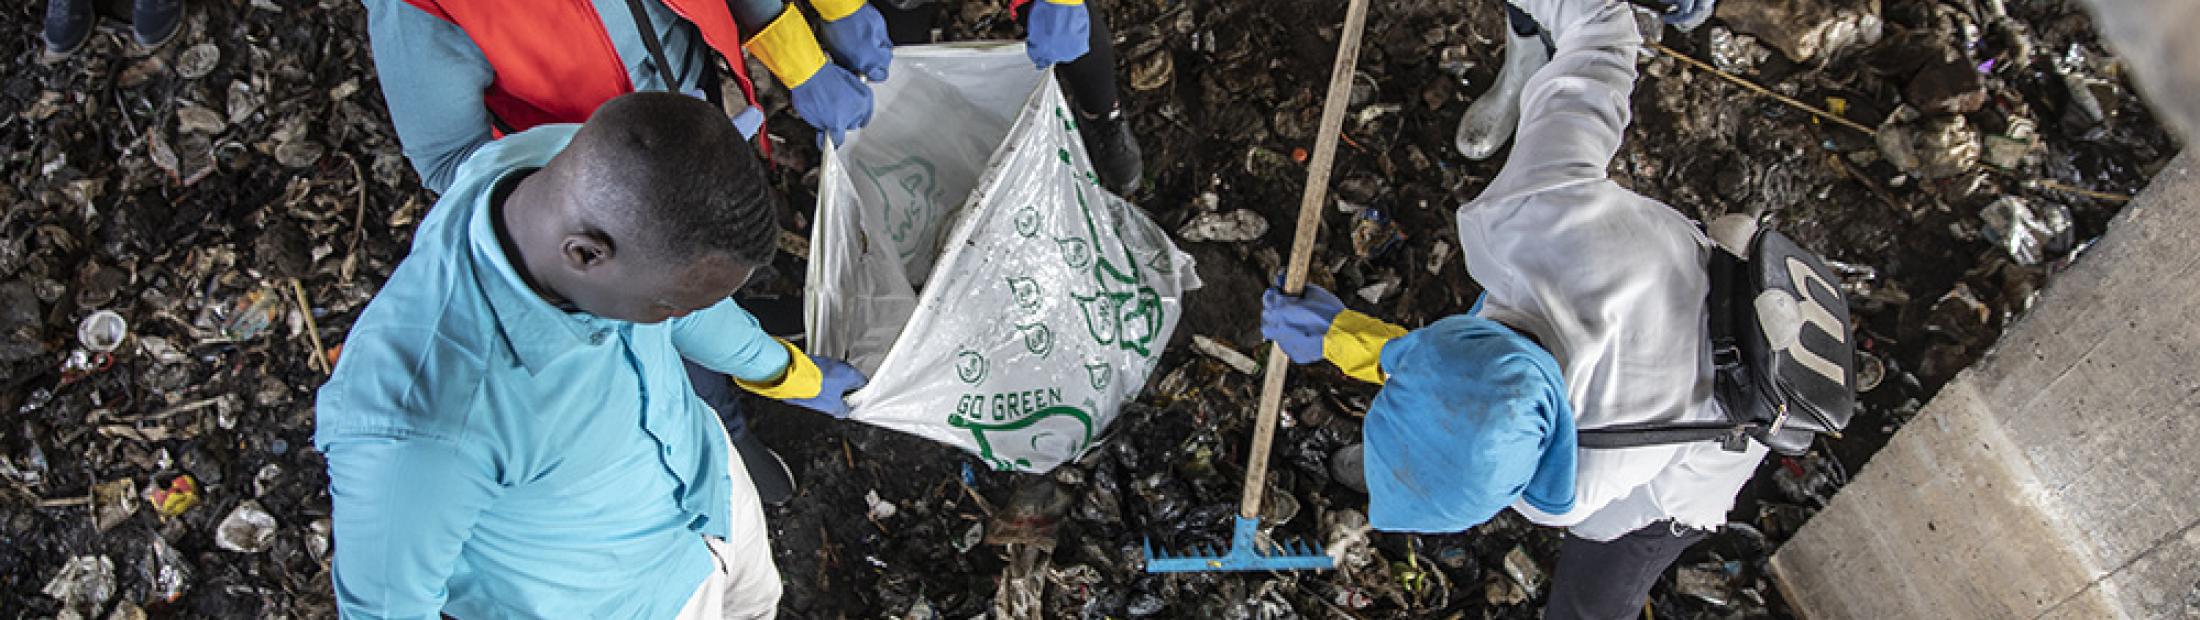 Refugiados en Egipto trabajan para disminuir la contaminación por plásticos en el Nilo